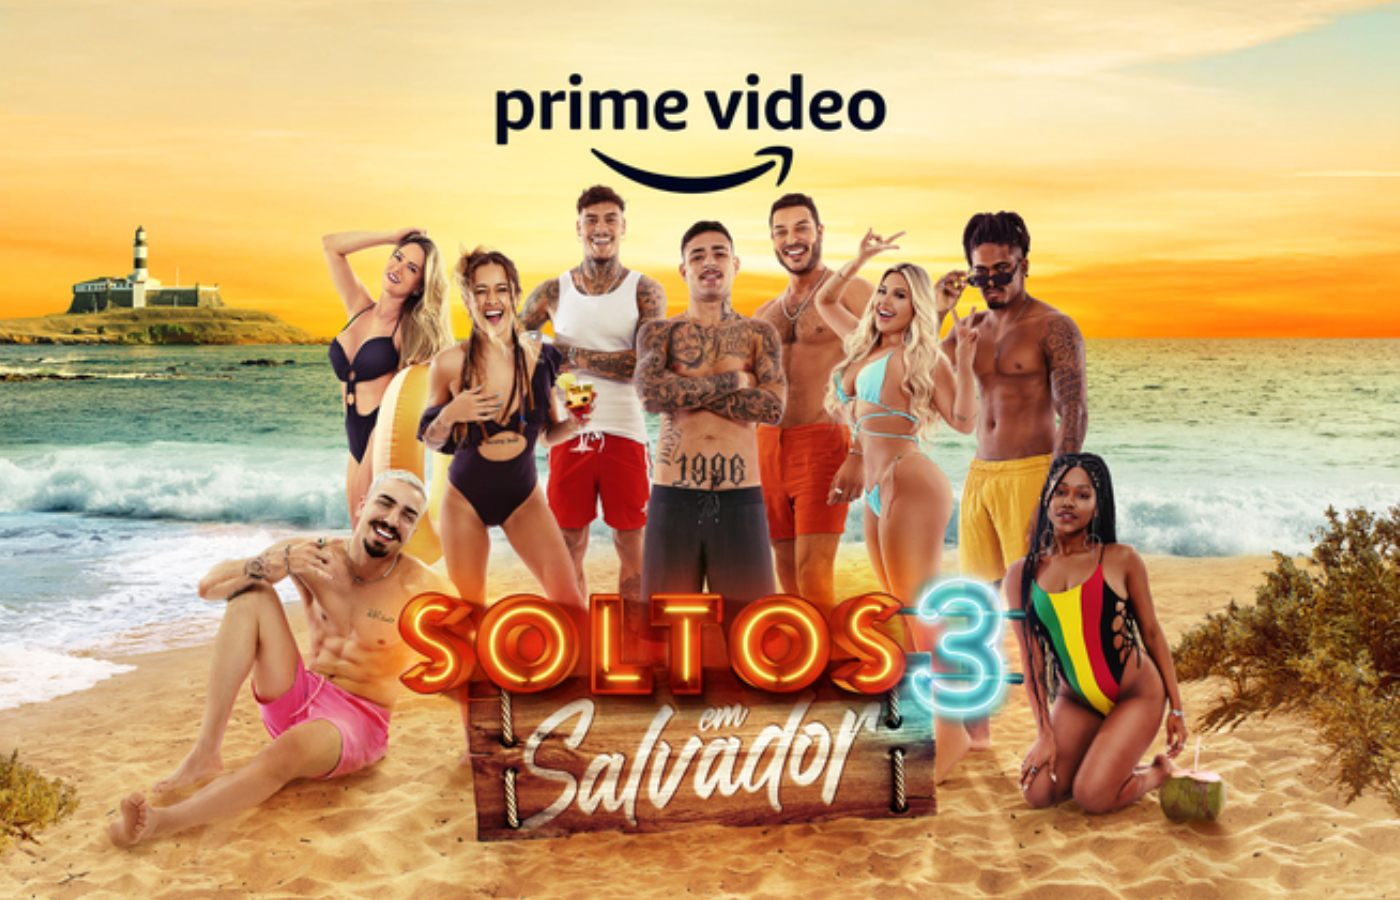 Soltos em Salvador ganha trailer e cartaz oficial no Prime Video